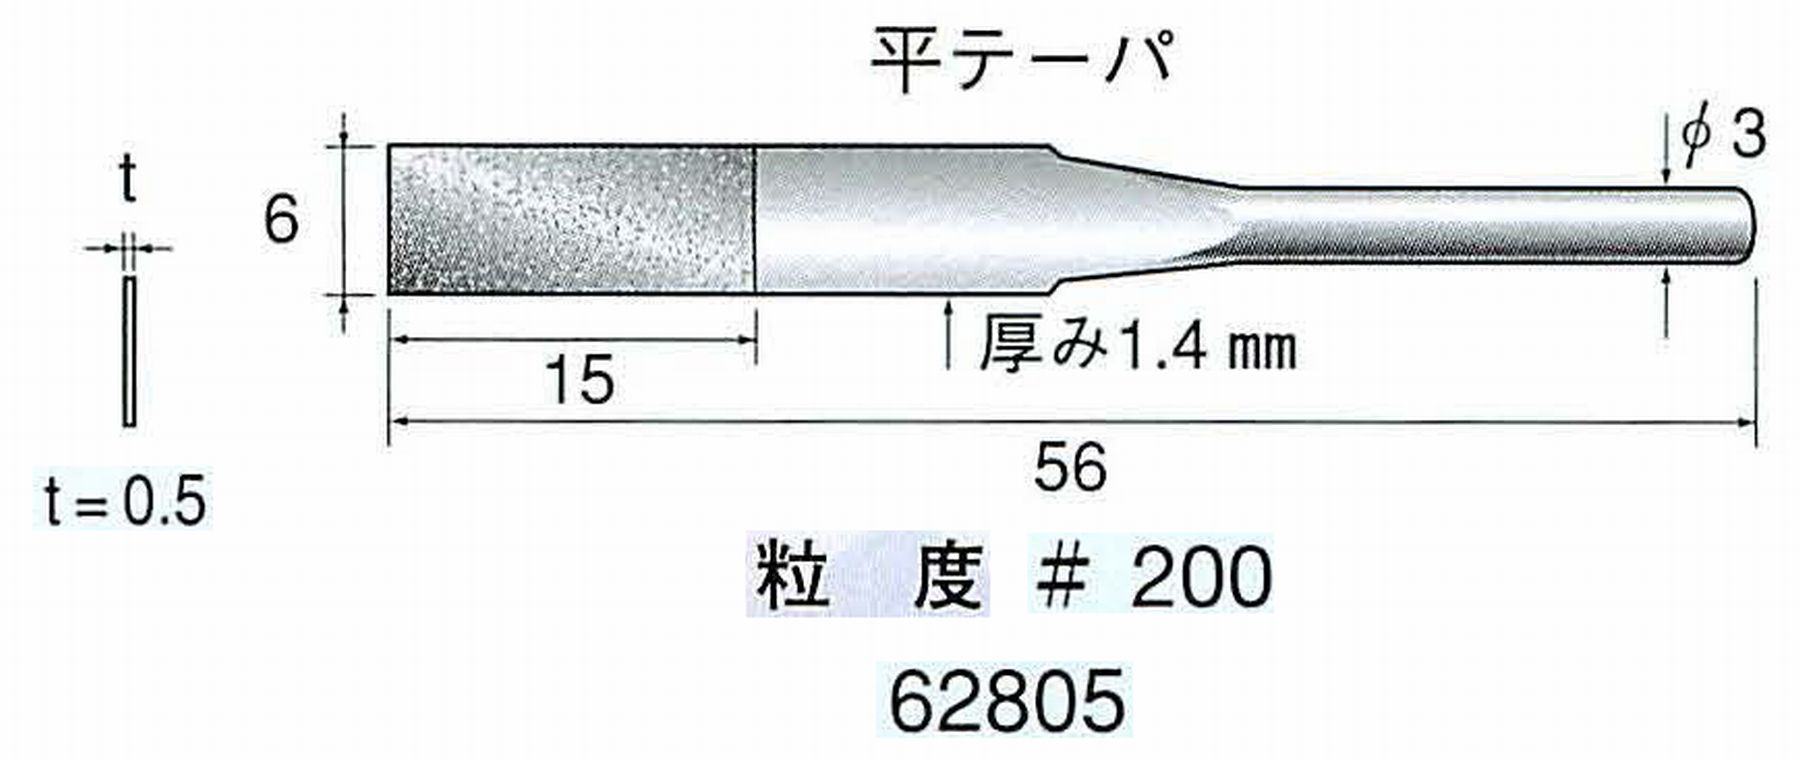 ナカニシ/NAKANISHI 電着ダイヤモンドヤスリショートタイプ 平テーパ 62805